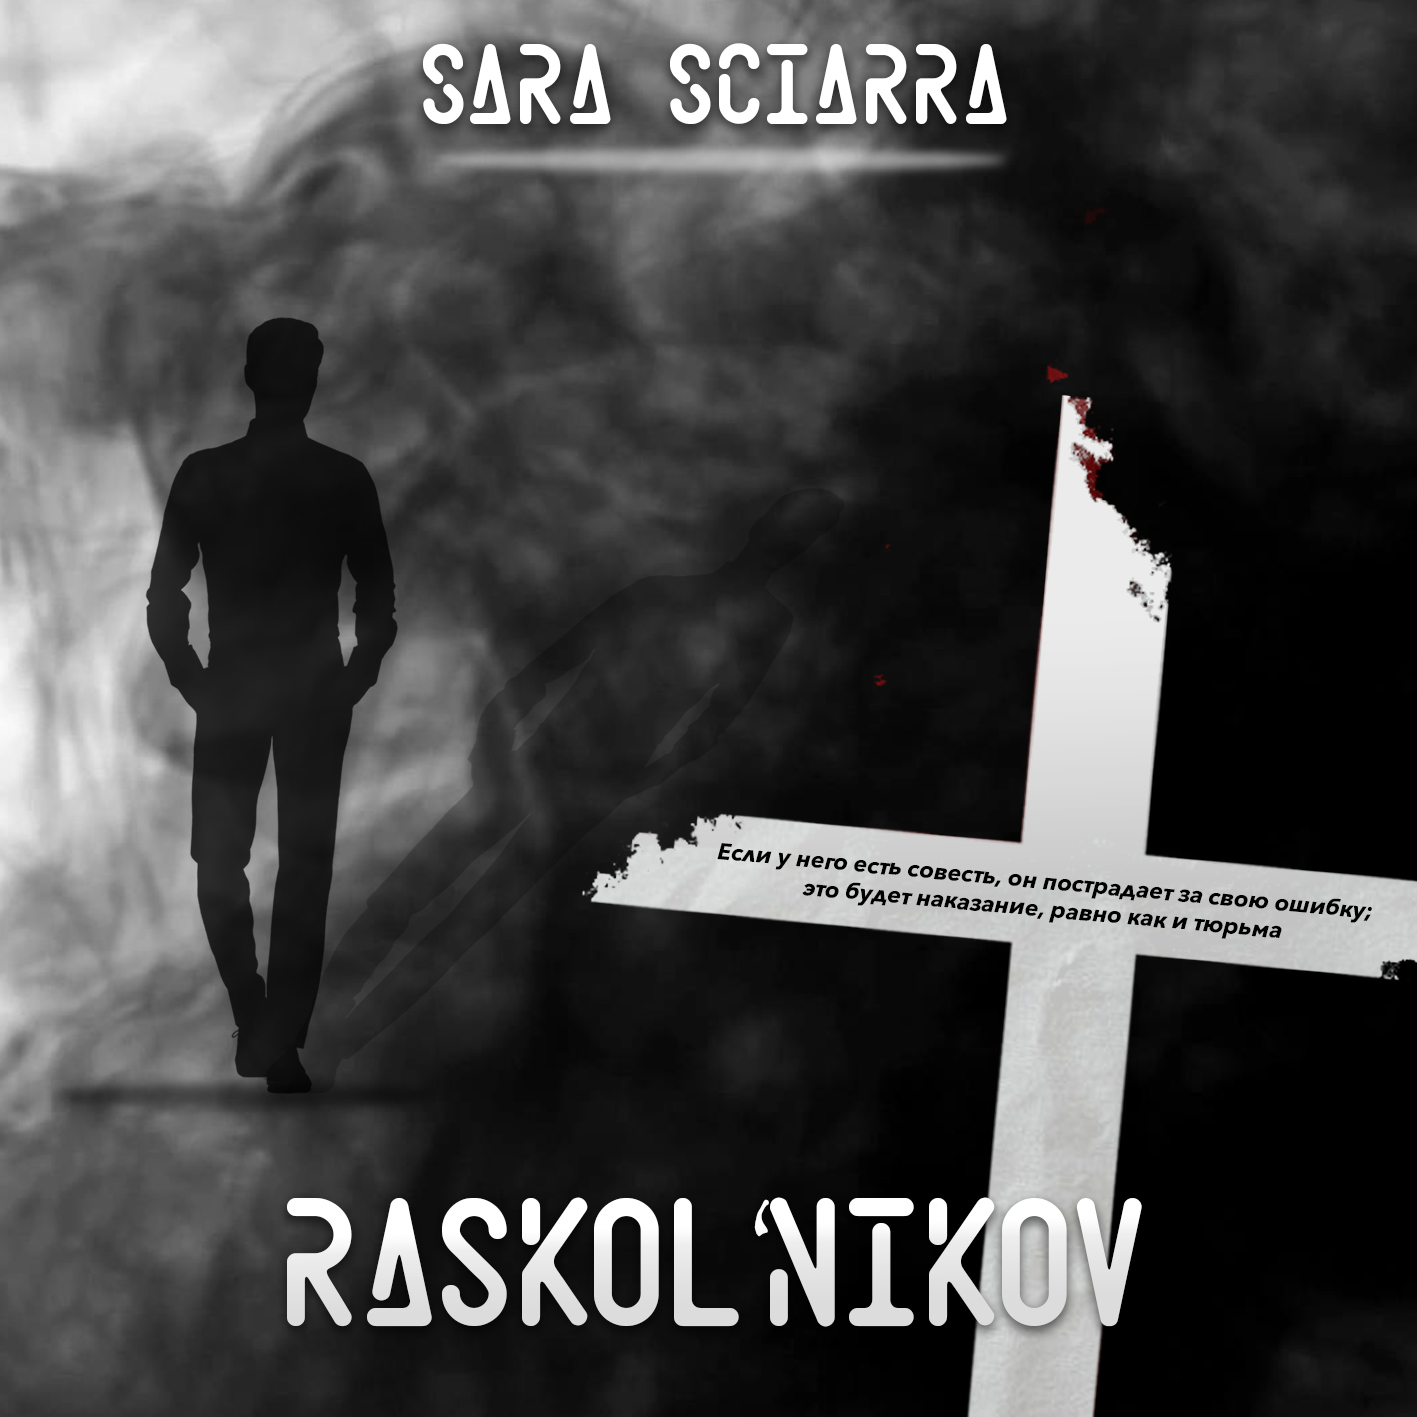 E' online Raskol’nikov, il nuovo singolo della cantautrice Sara Sciarra ispirato a Dostoevskij